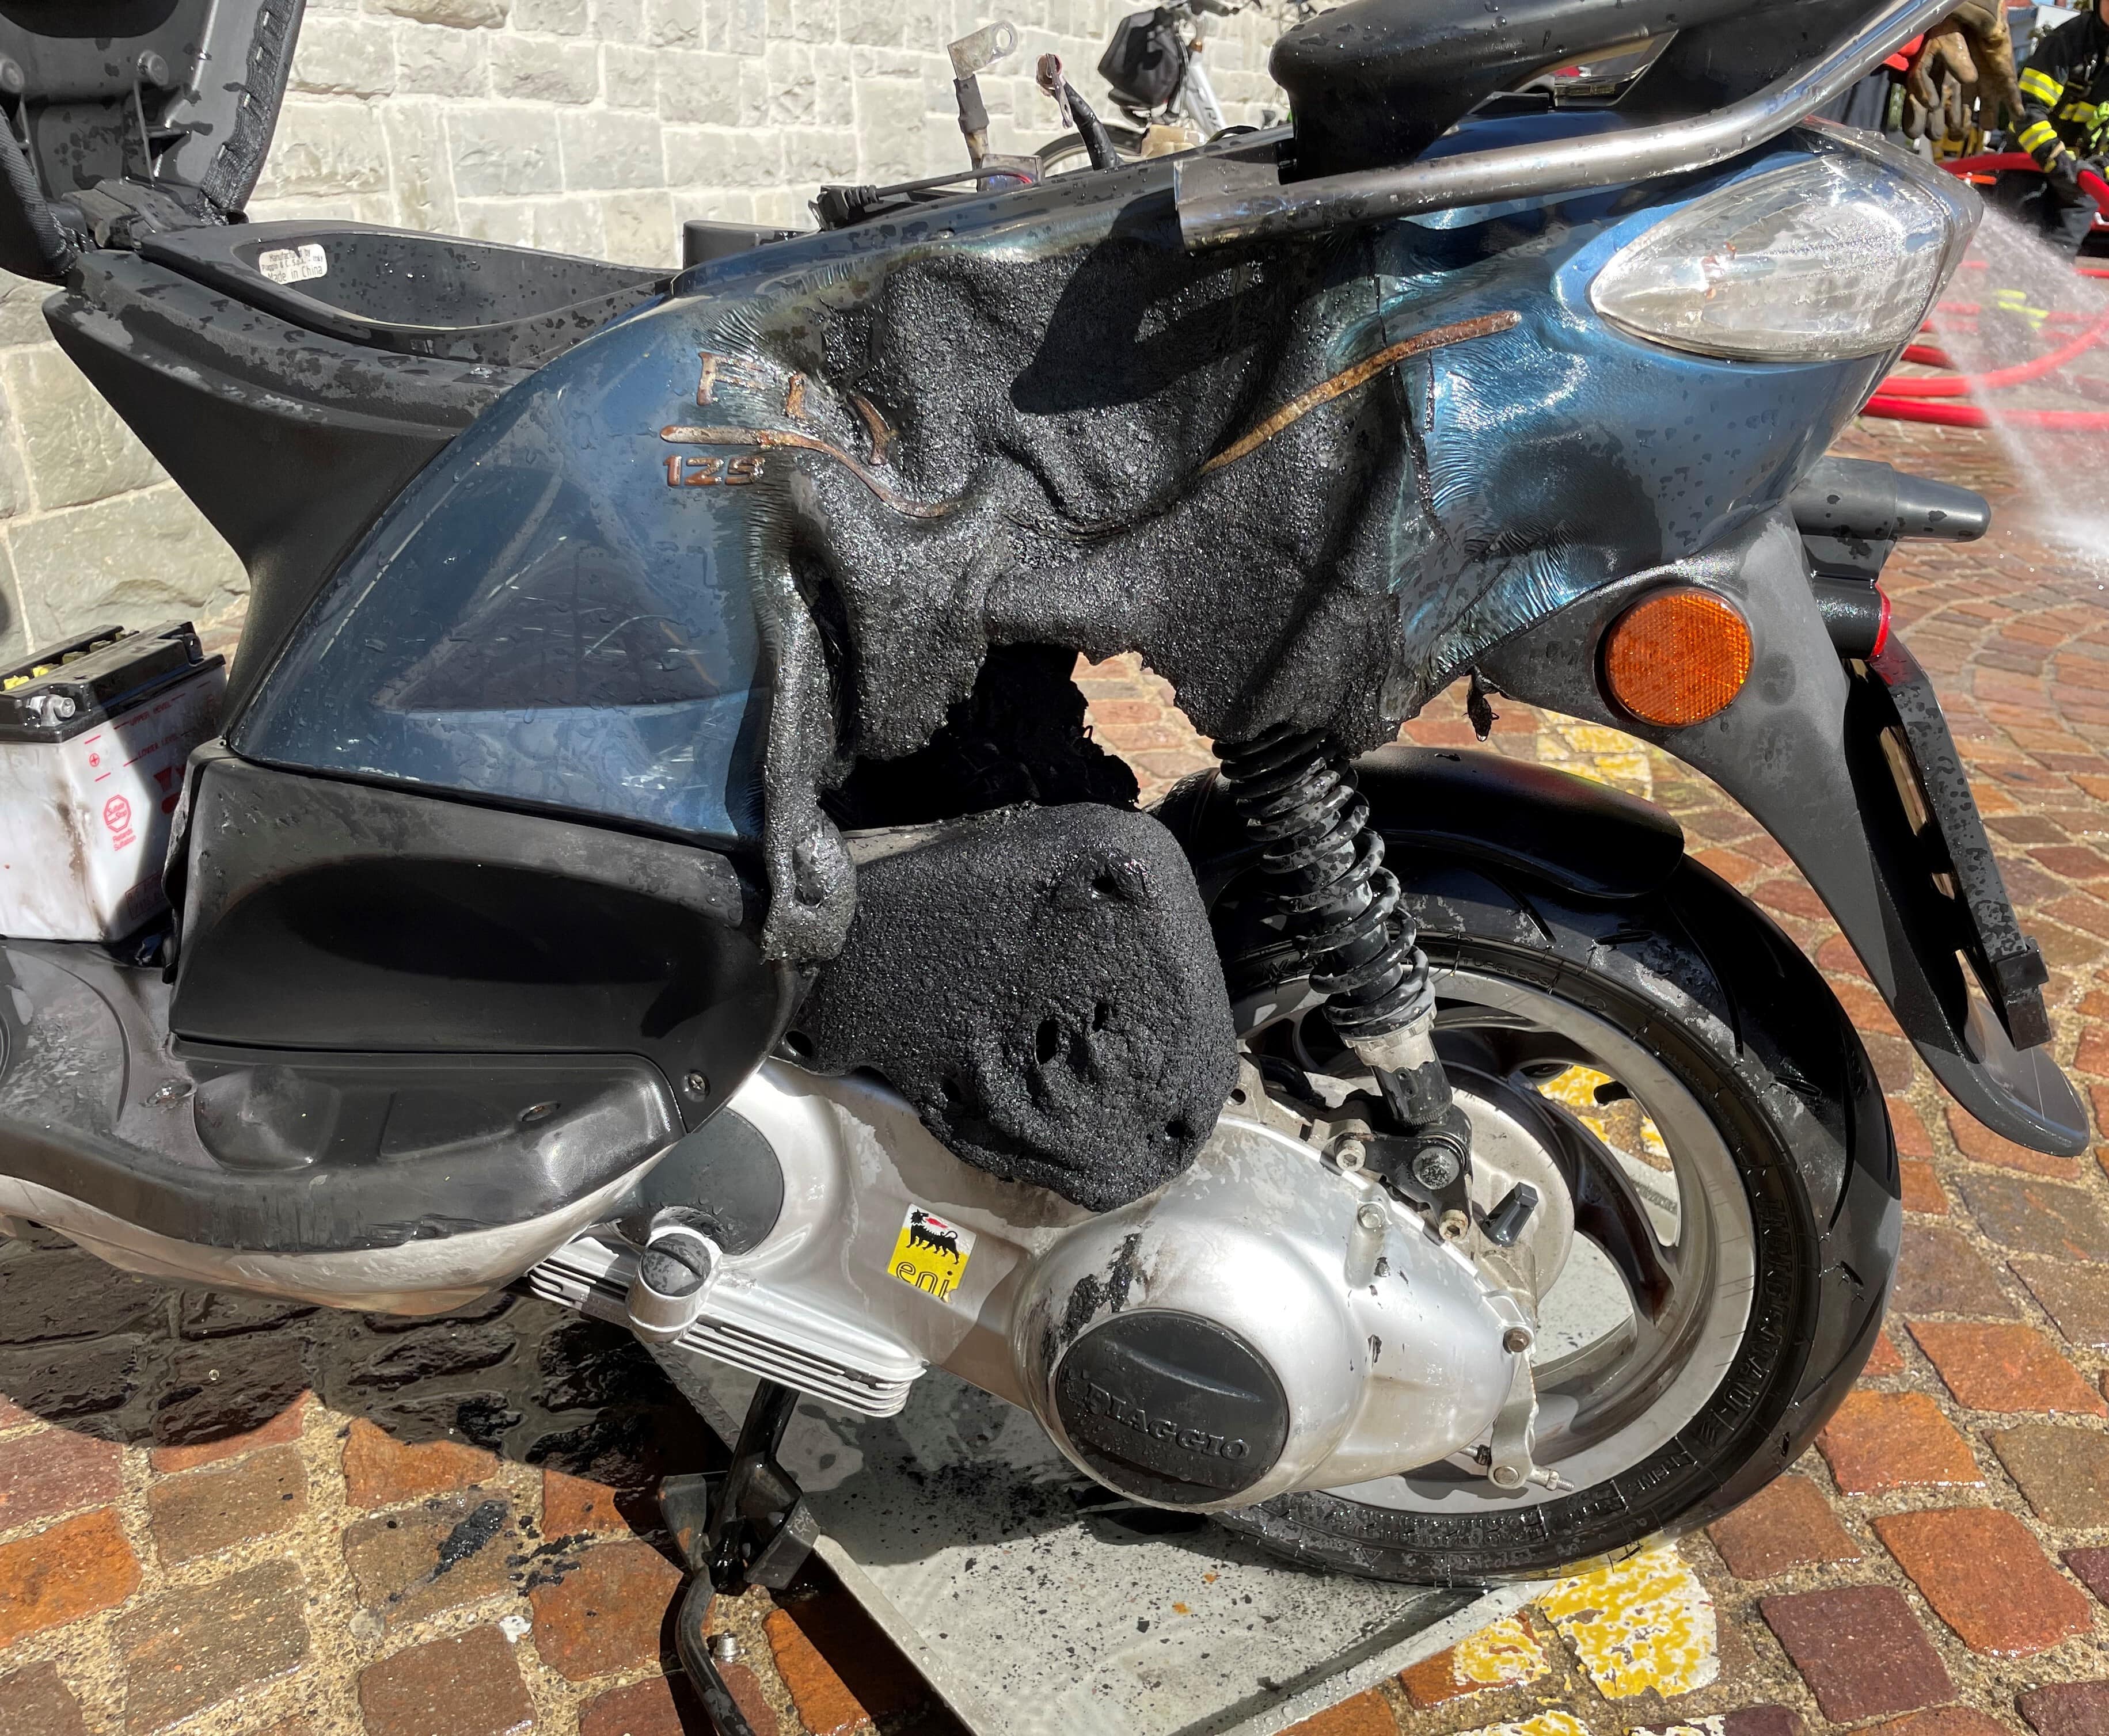 Brand Motorrad Amriswil technische Ursache